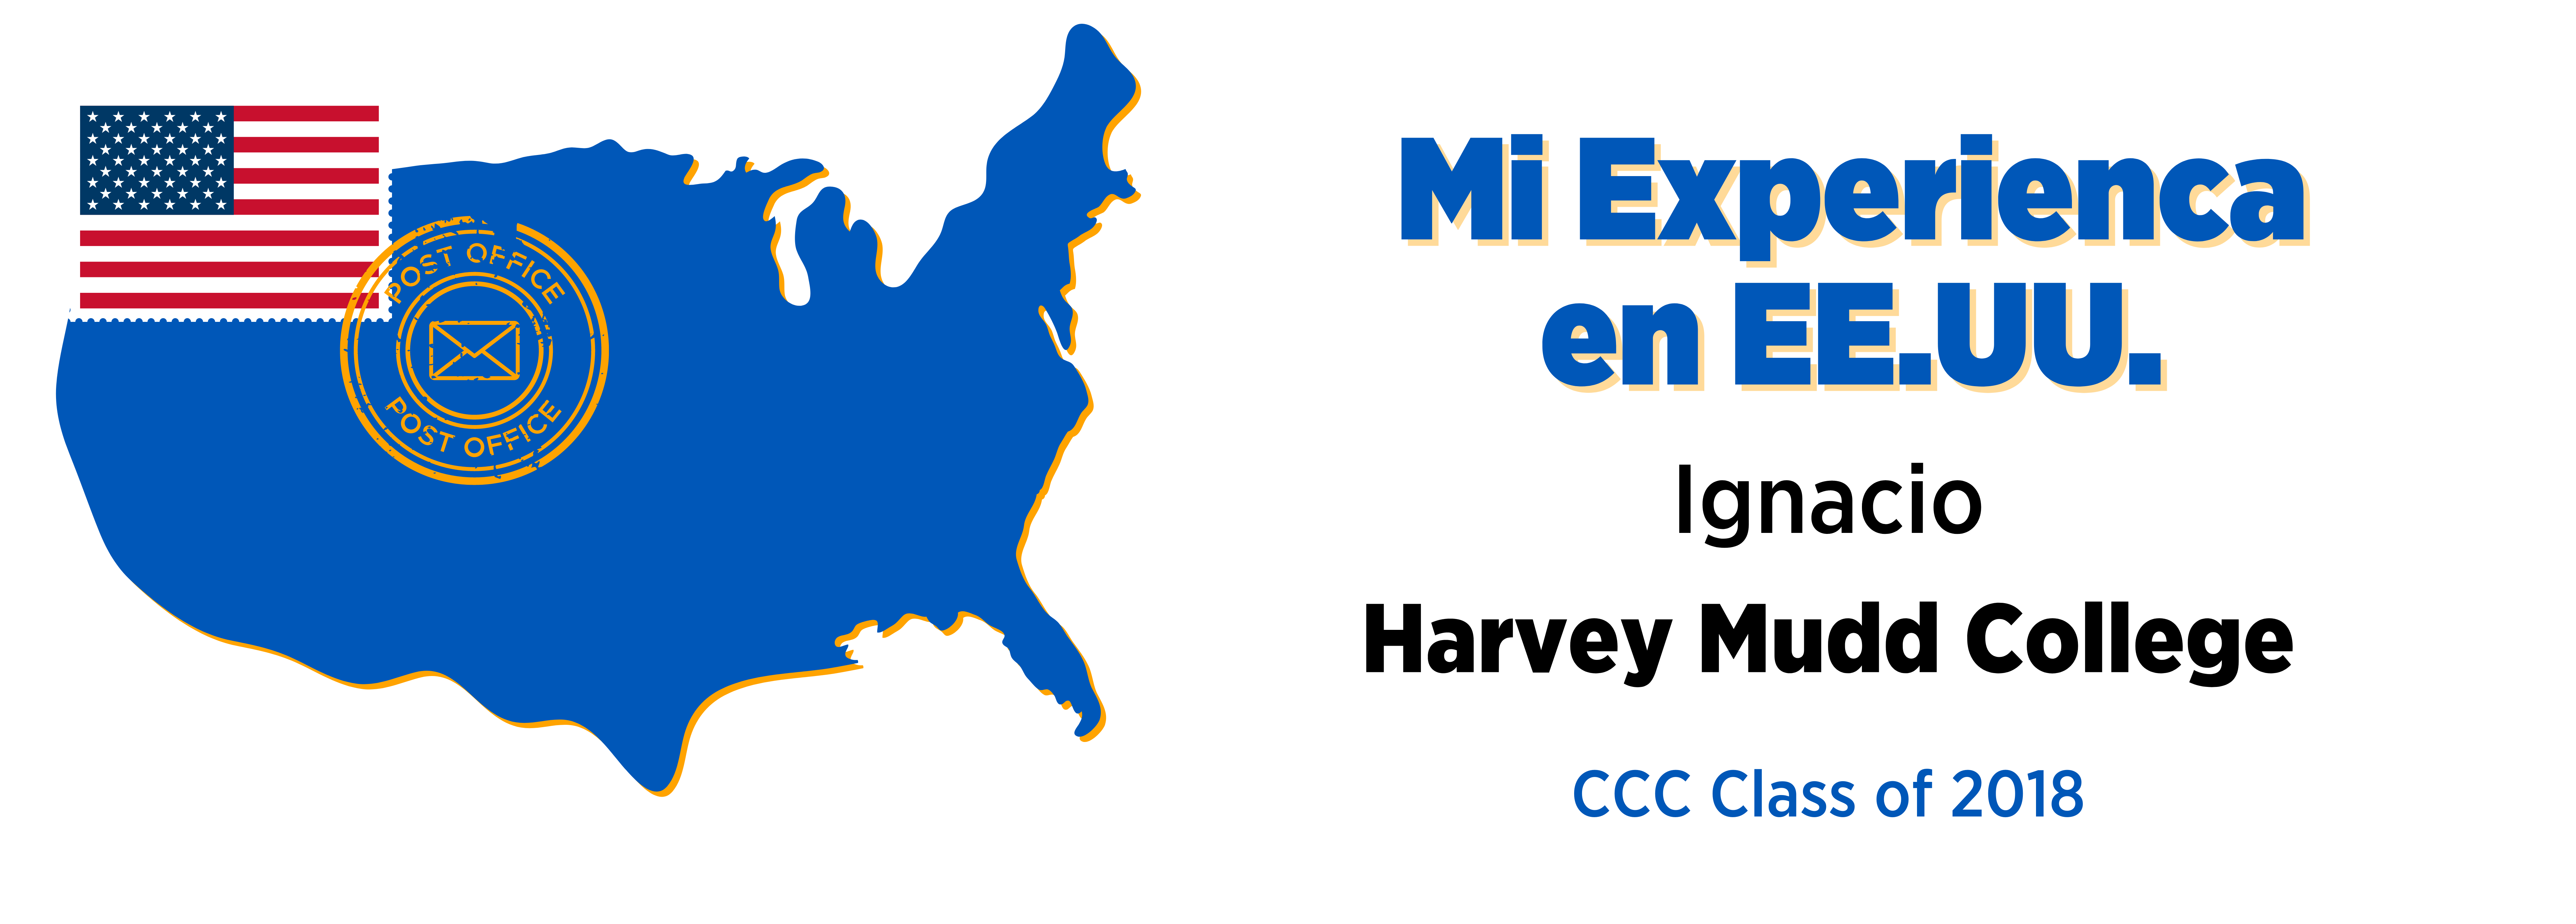 Mi Experiencia en EE.UU.: Ignacio & Harvey Mudd College